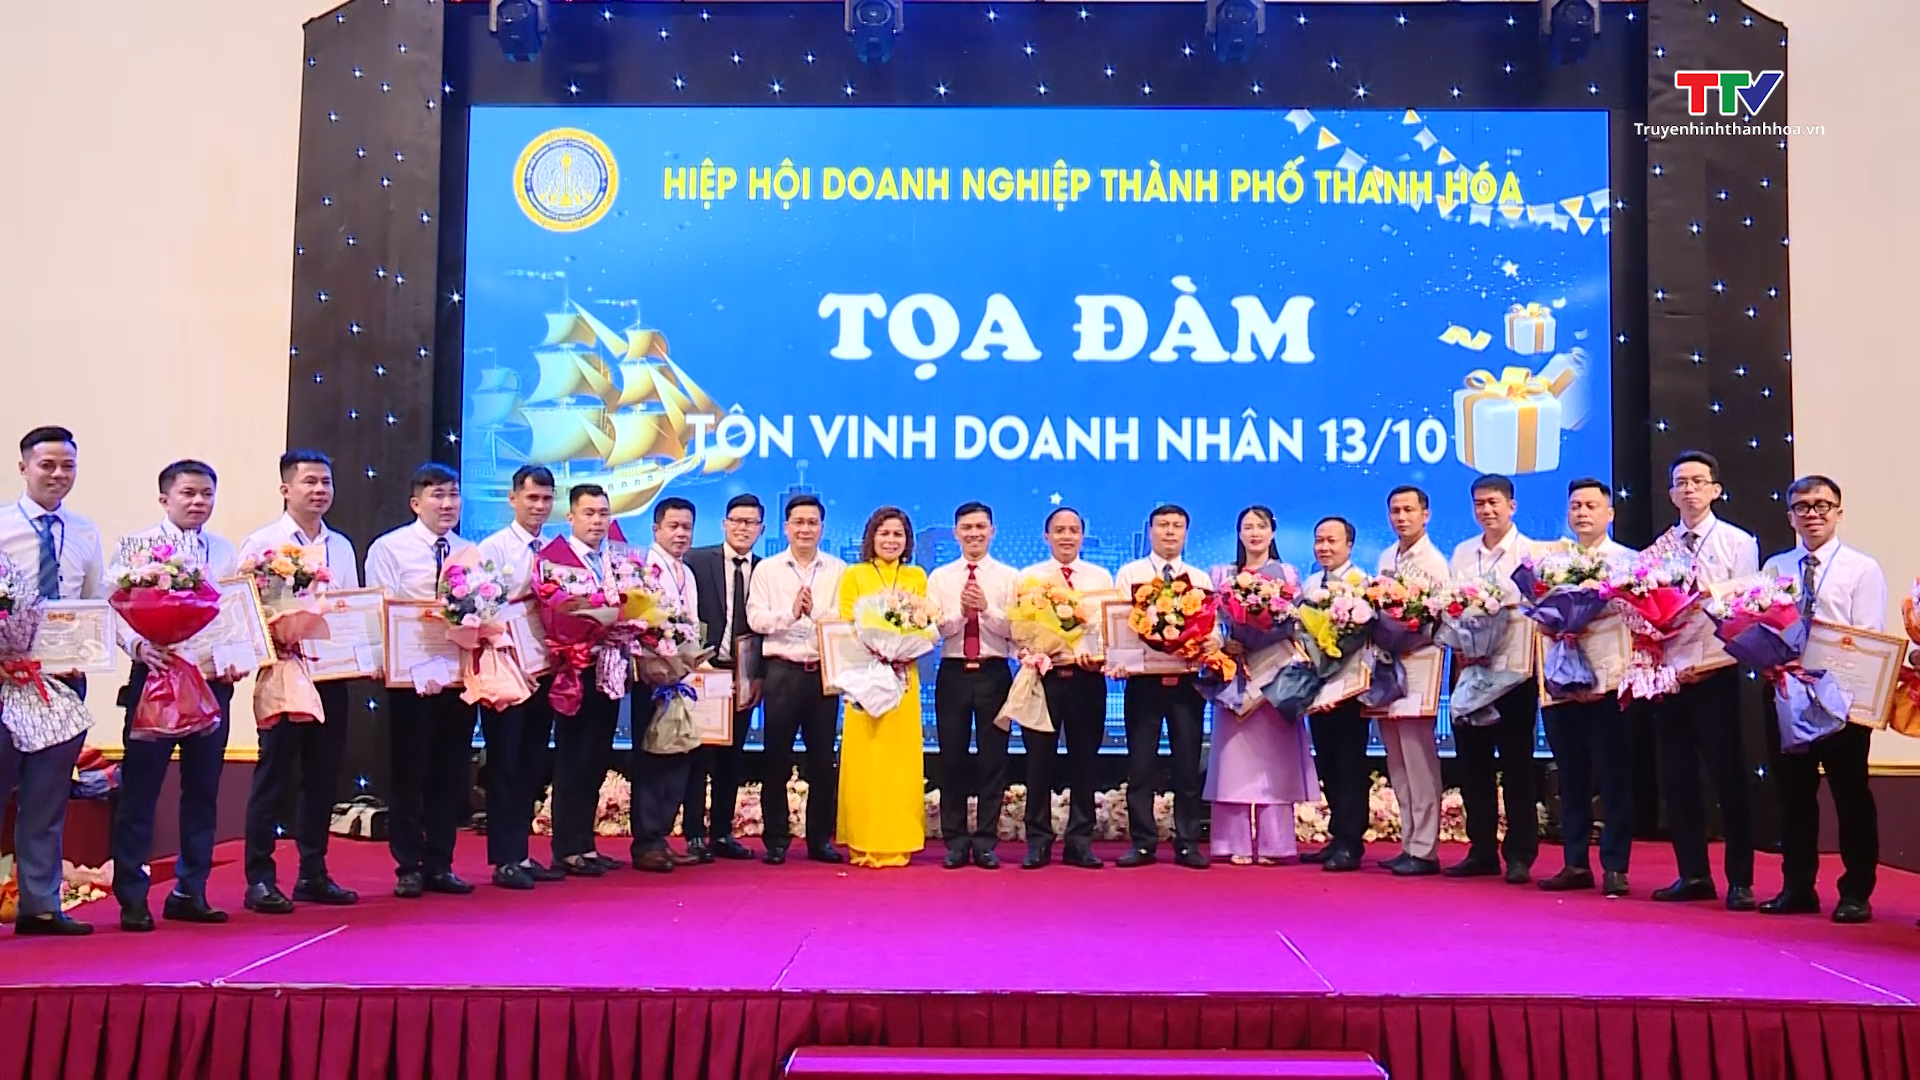 Hiệp hội Doanh nghiệp thành phố Thanh Hoá: Kết nối giá trị - Hội tụ tinh hoa- Ảnh 5.